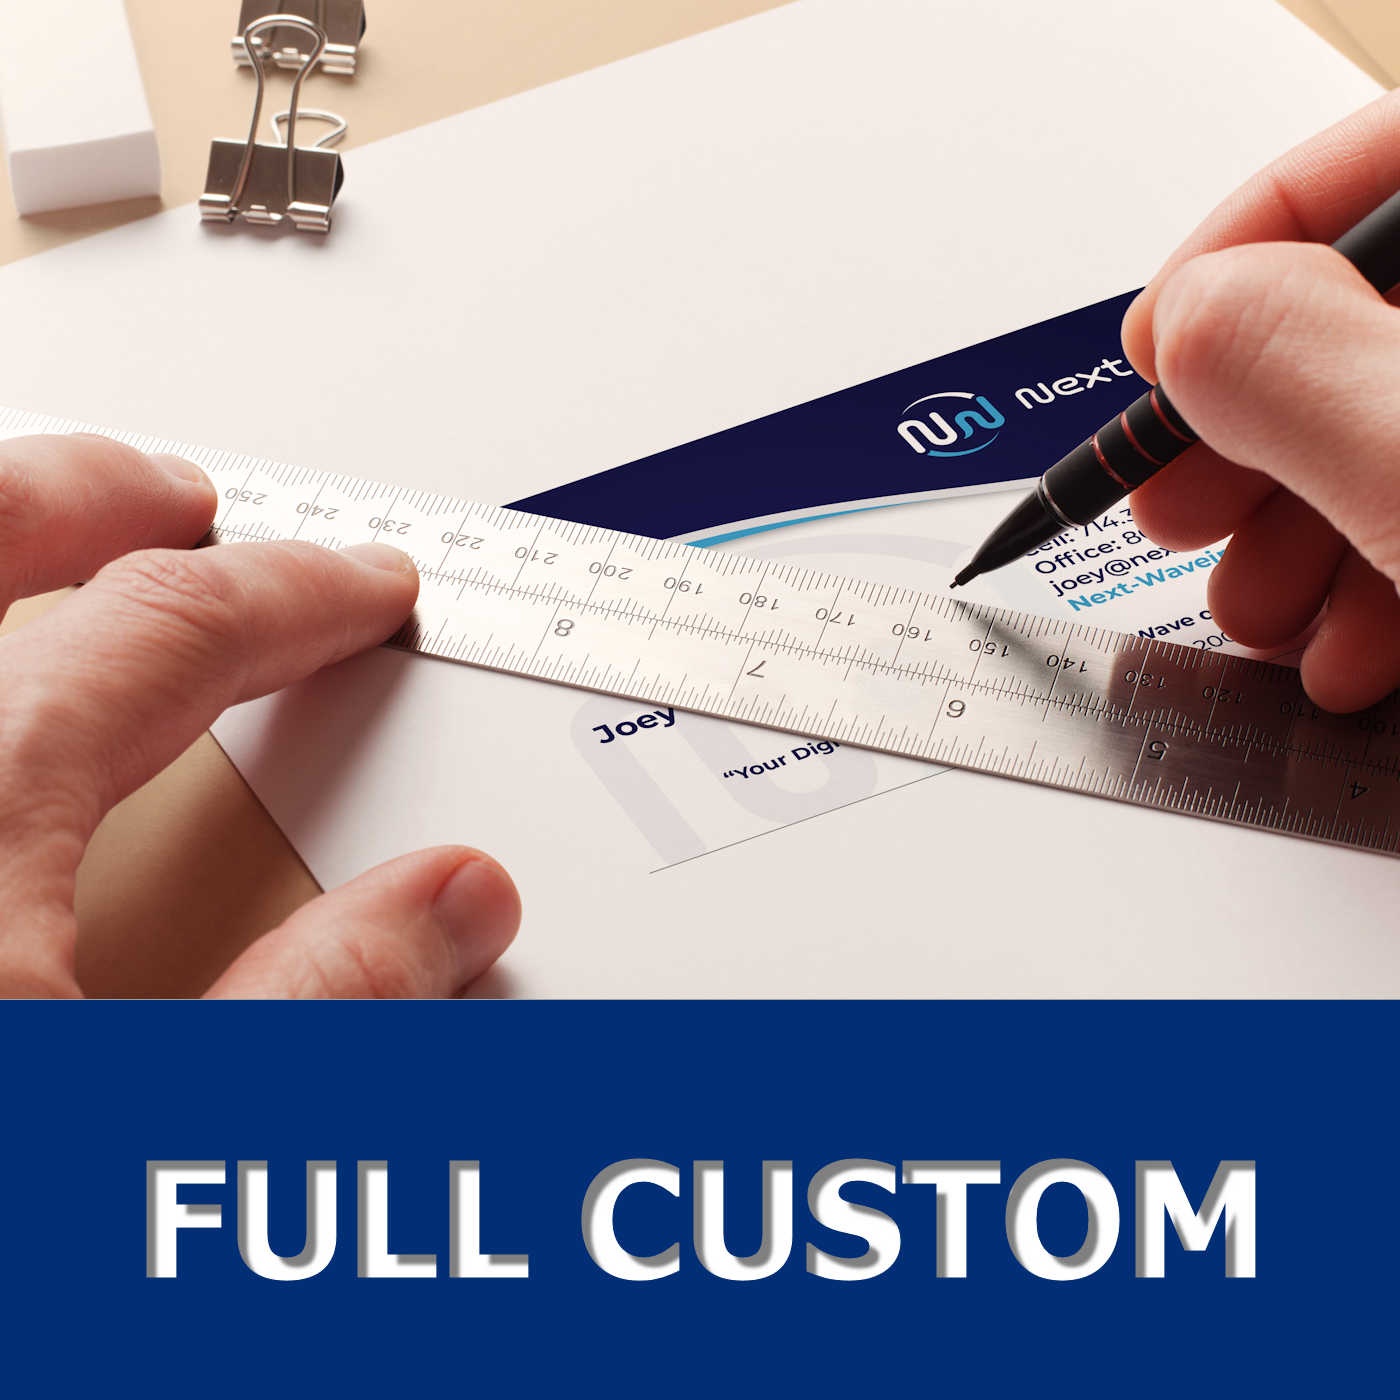 AVS Rize - Standard Business Card Full Custom Design